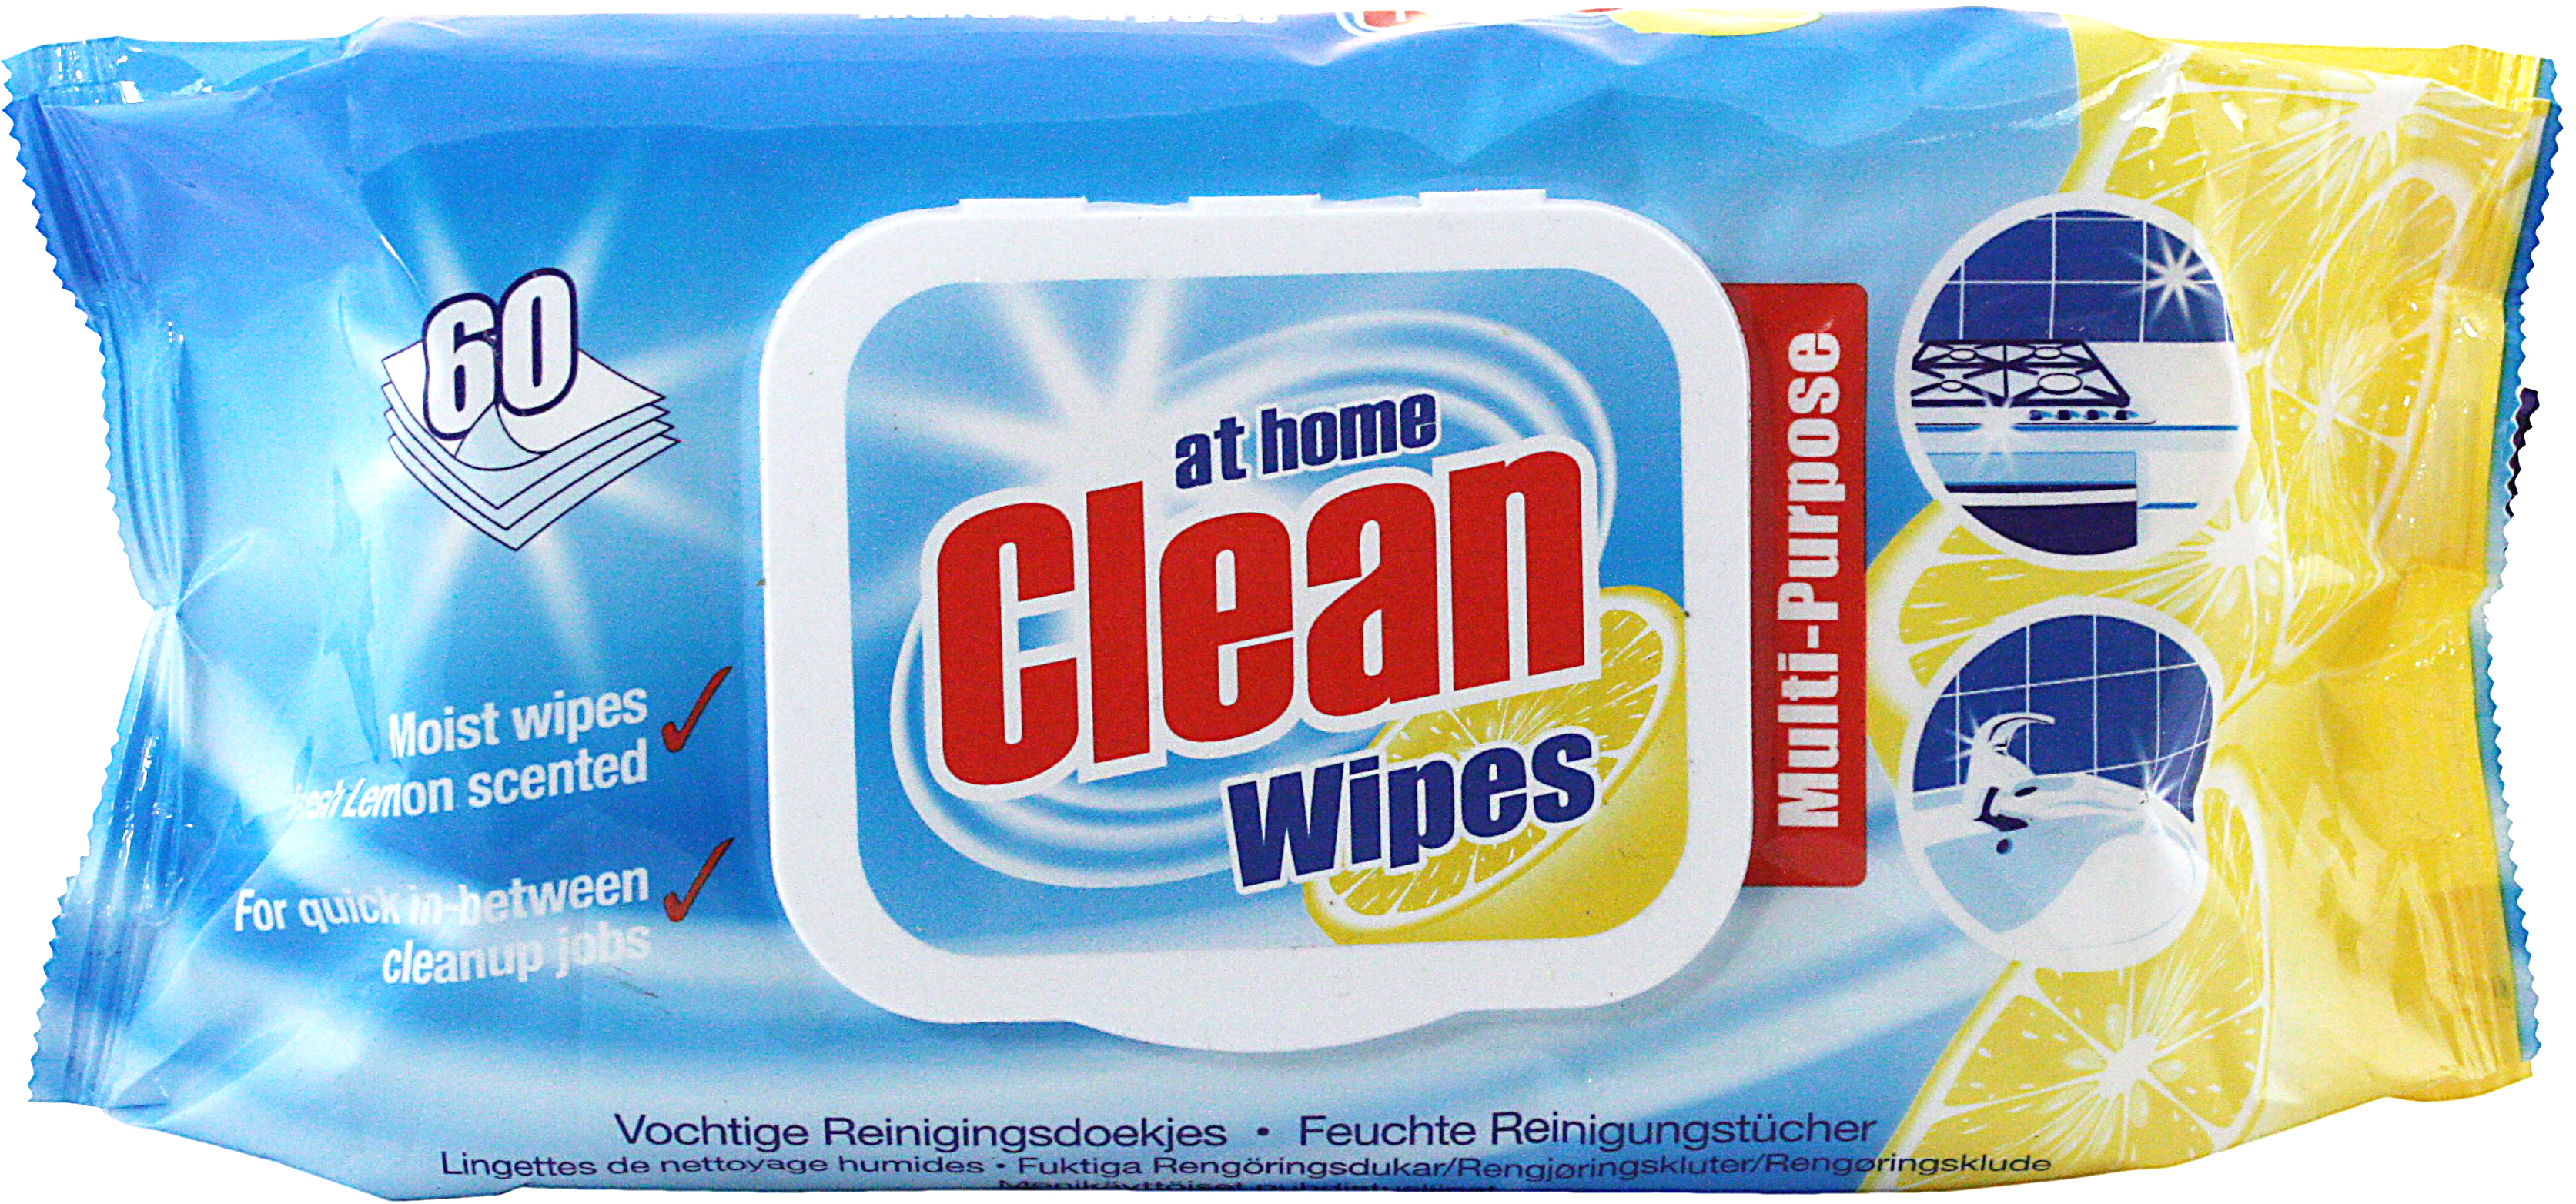 00605 - Multi cleaning wipes 60 pcs - Lemon